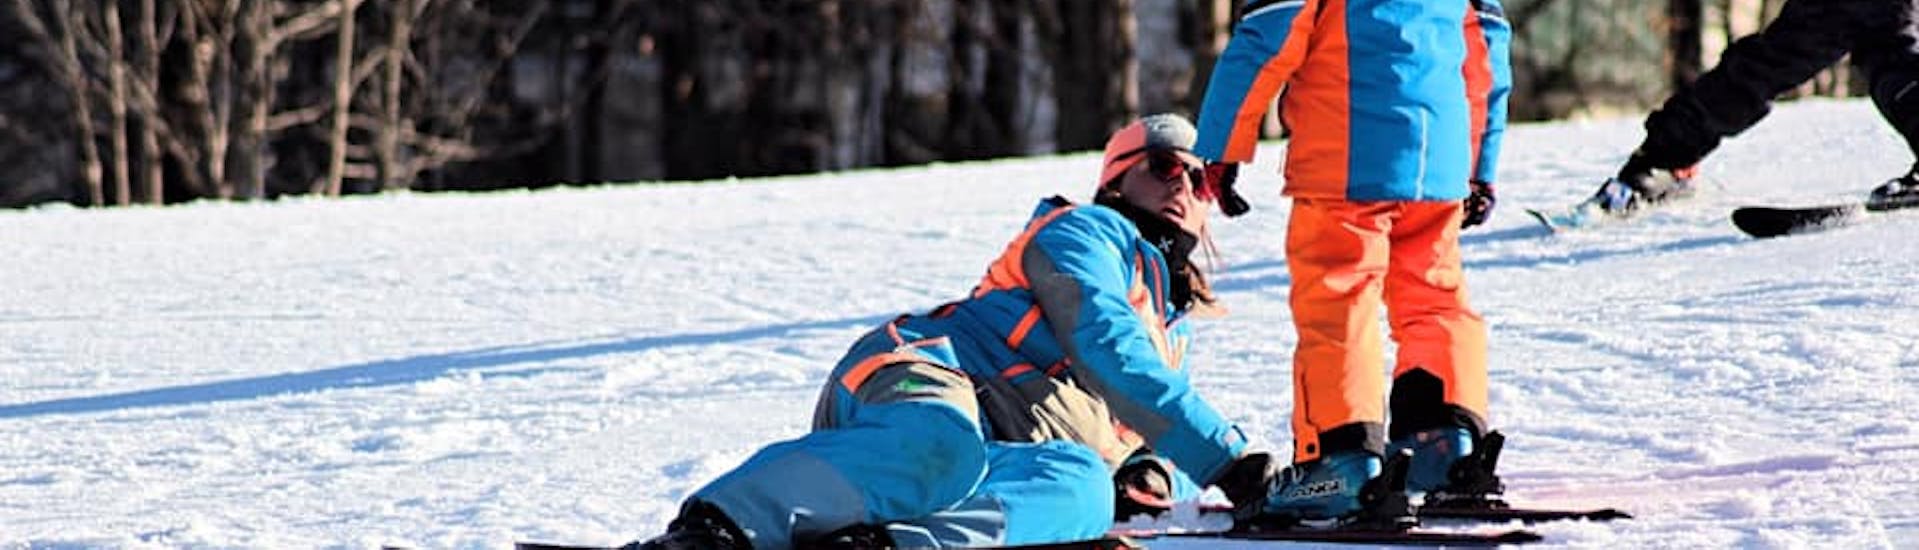 Ski-instructeur volgt een kind dichtbij in Limone tijdens een van de Privé Kinderskilessen voor Alle Niveaus.